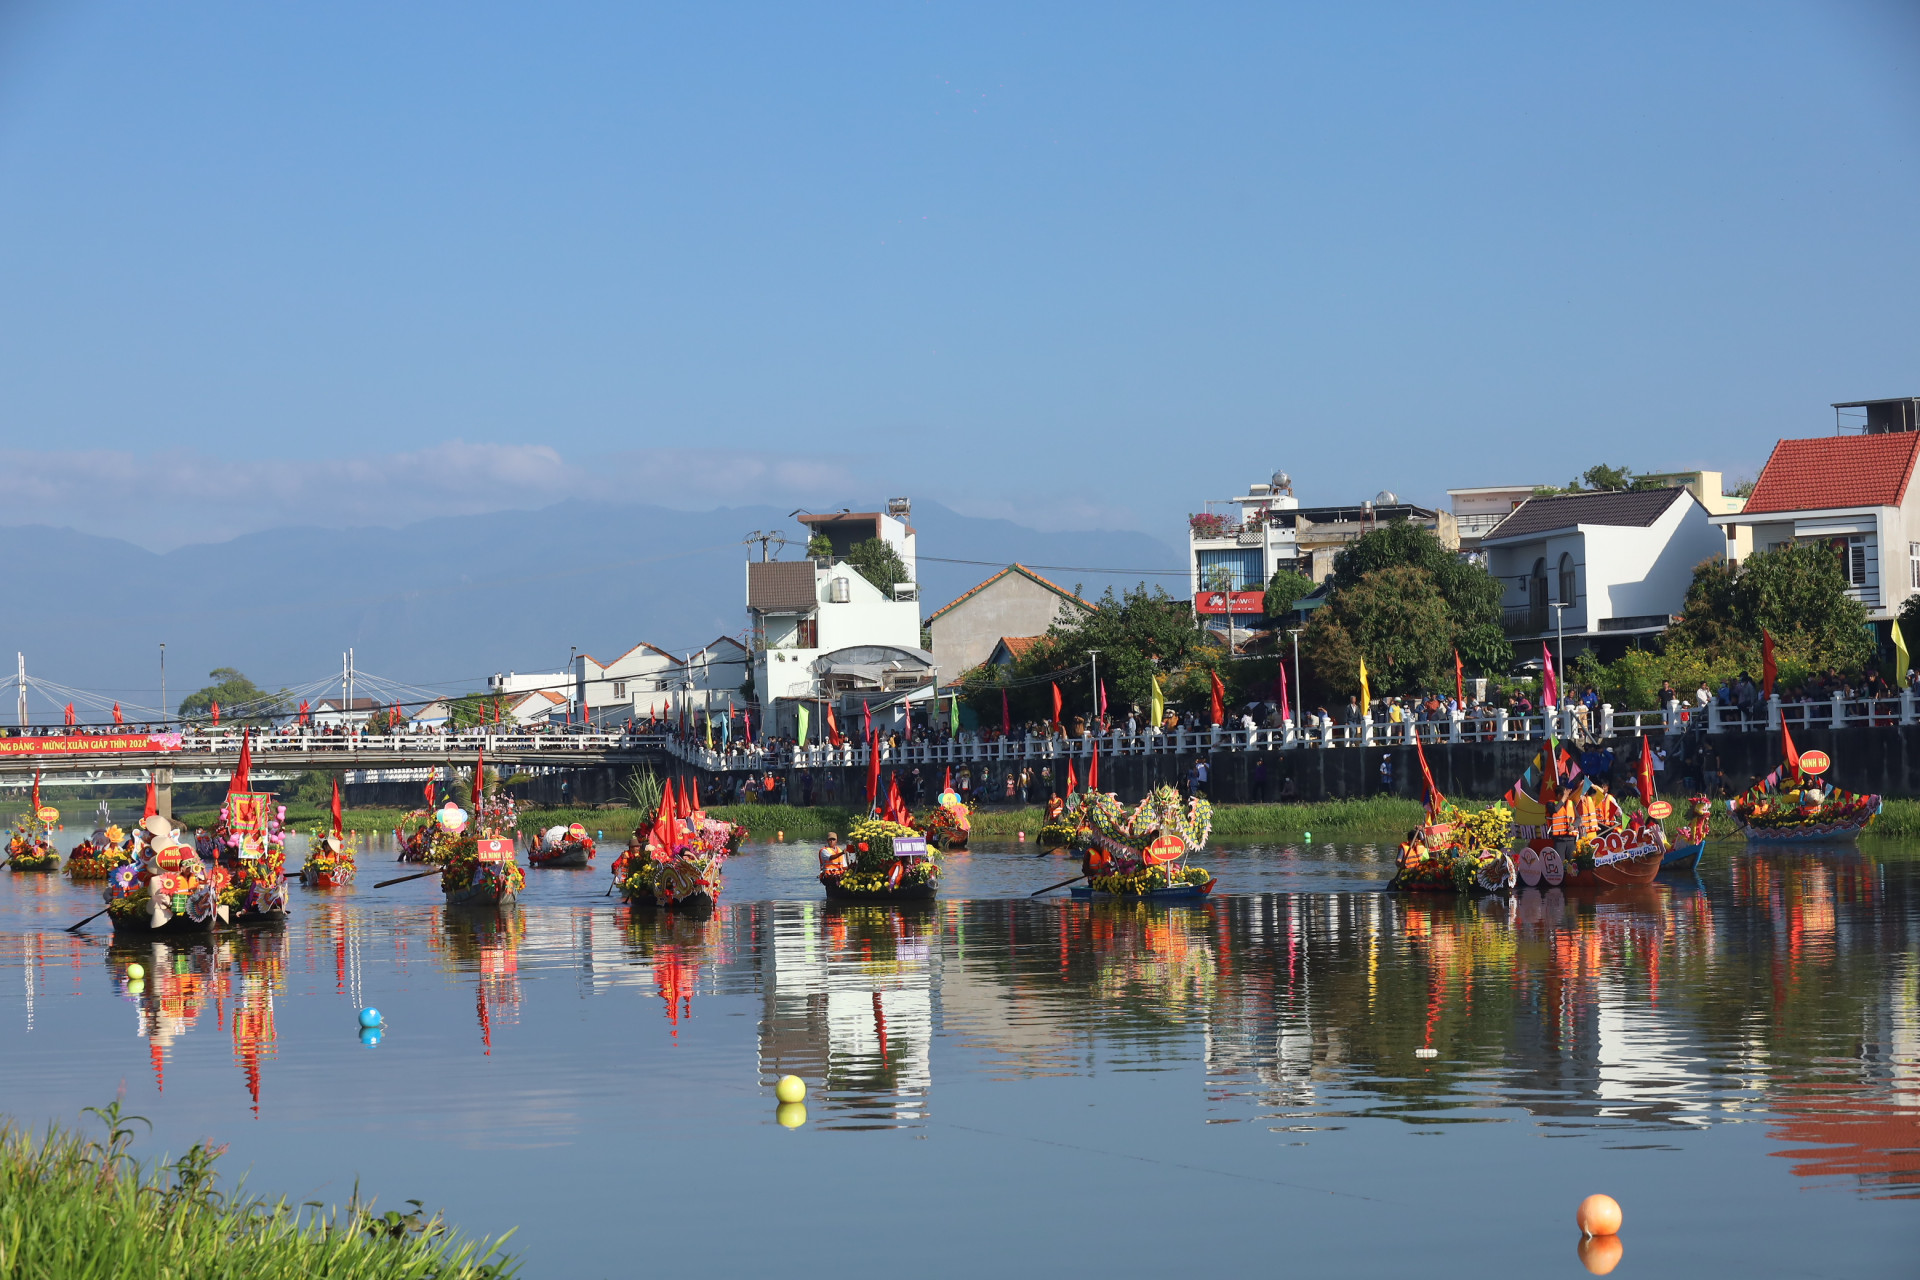 Hình ảnh những chiếc thuyền hoa nối đuôi nhau chầm chậm trôi trên dòng sông Dinh đem đến nhiều cảm xúc đối với người xem.